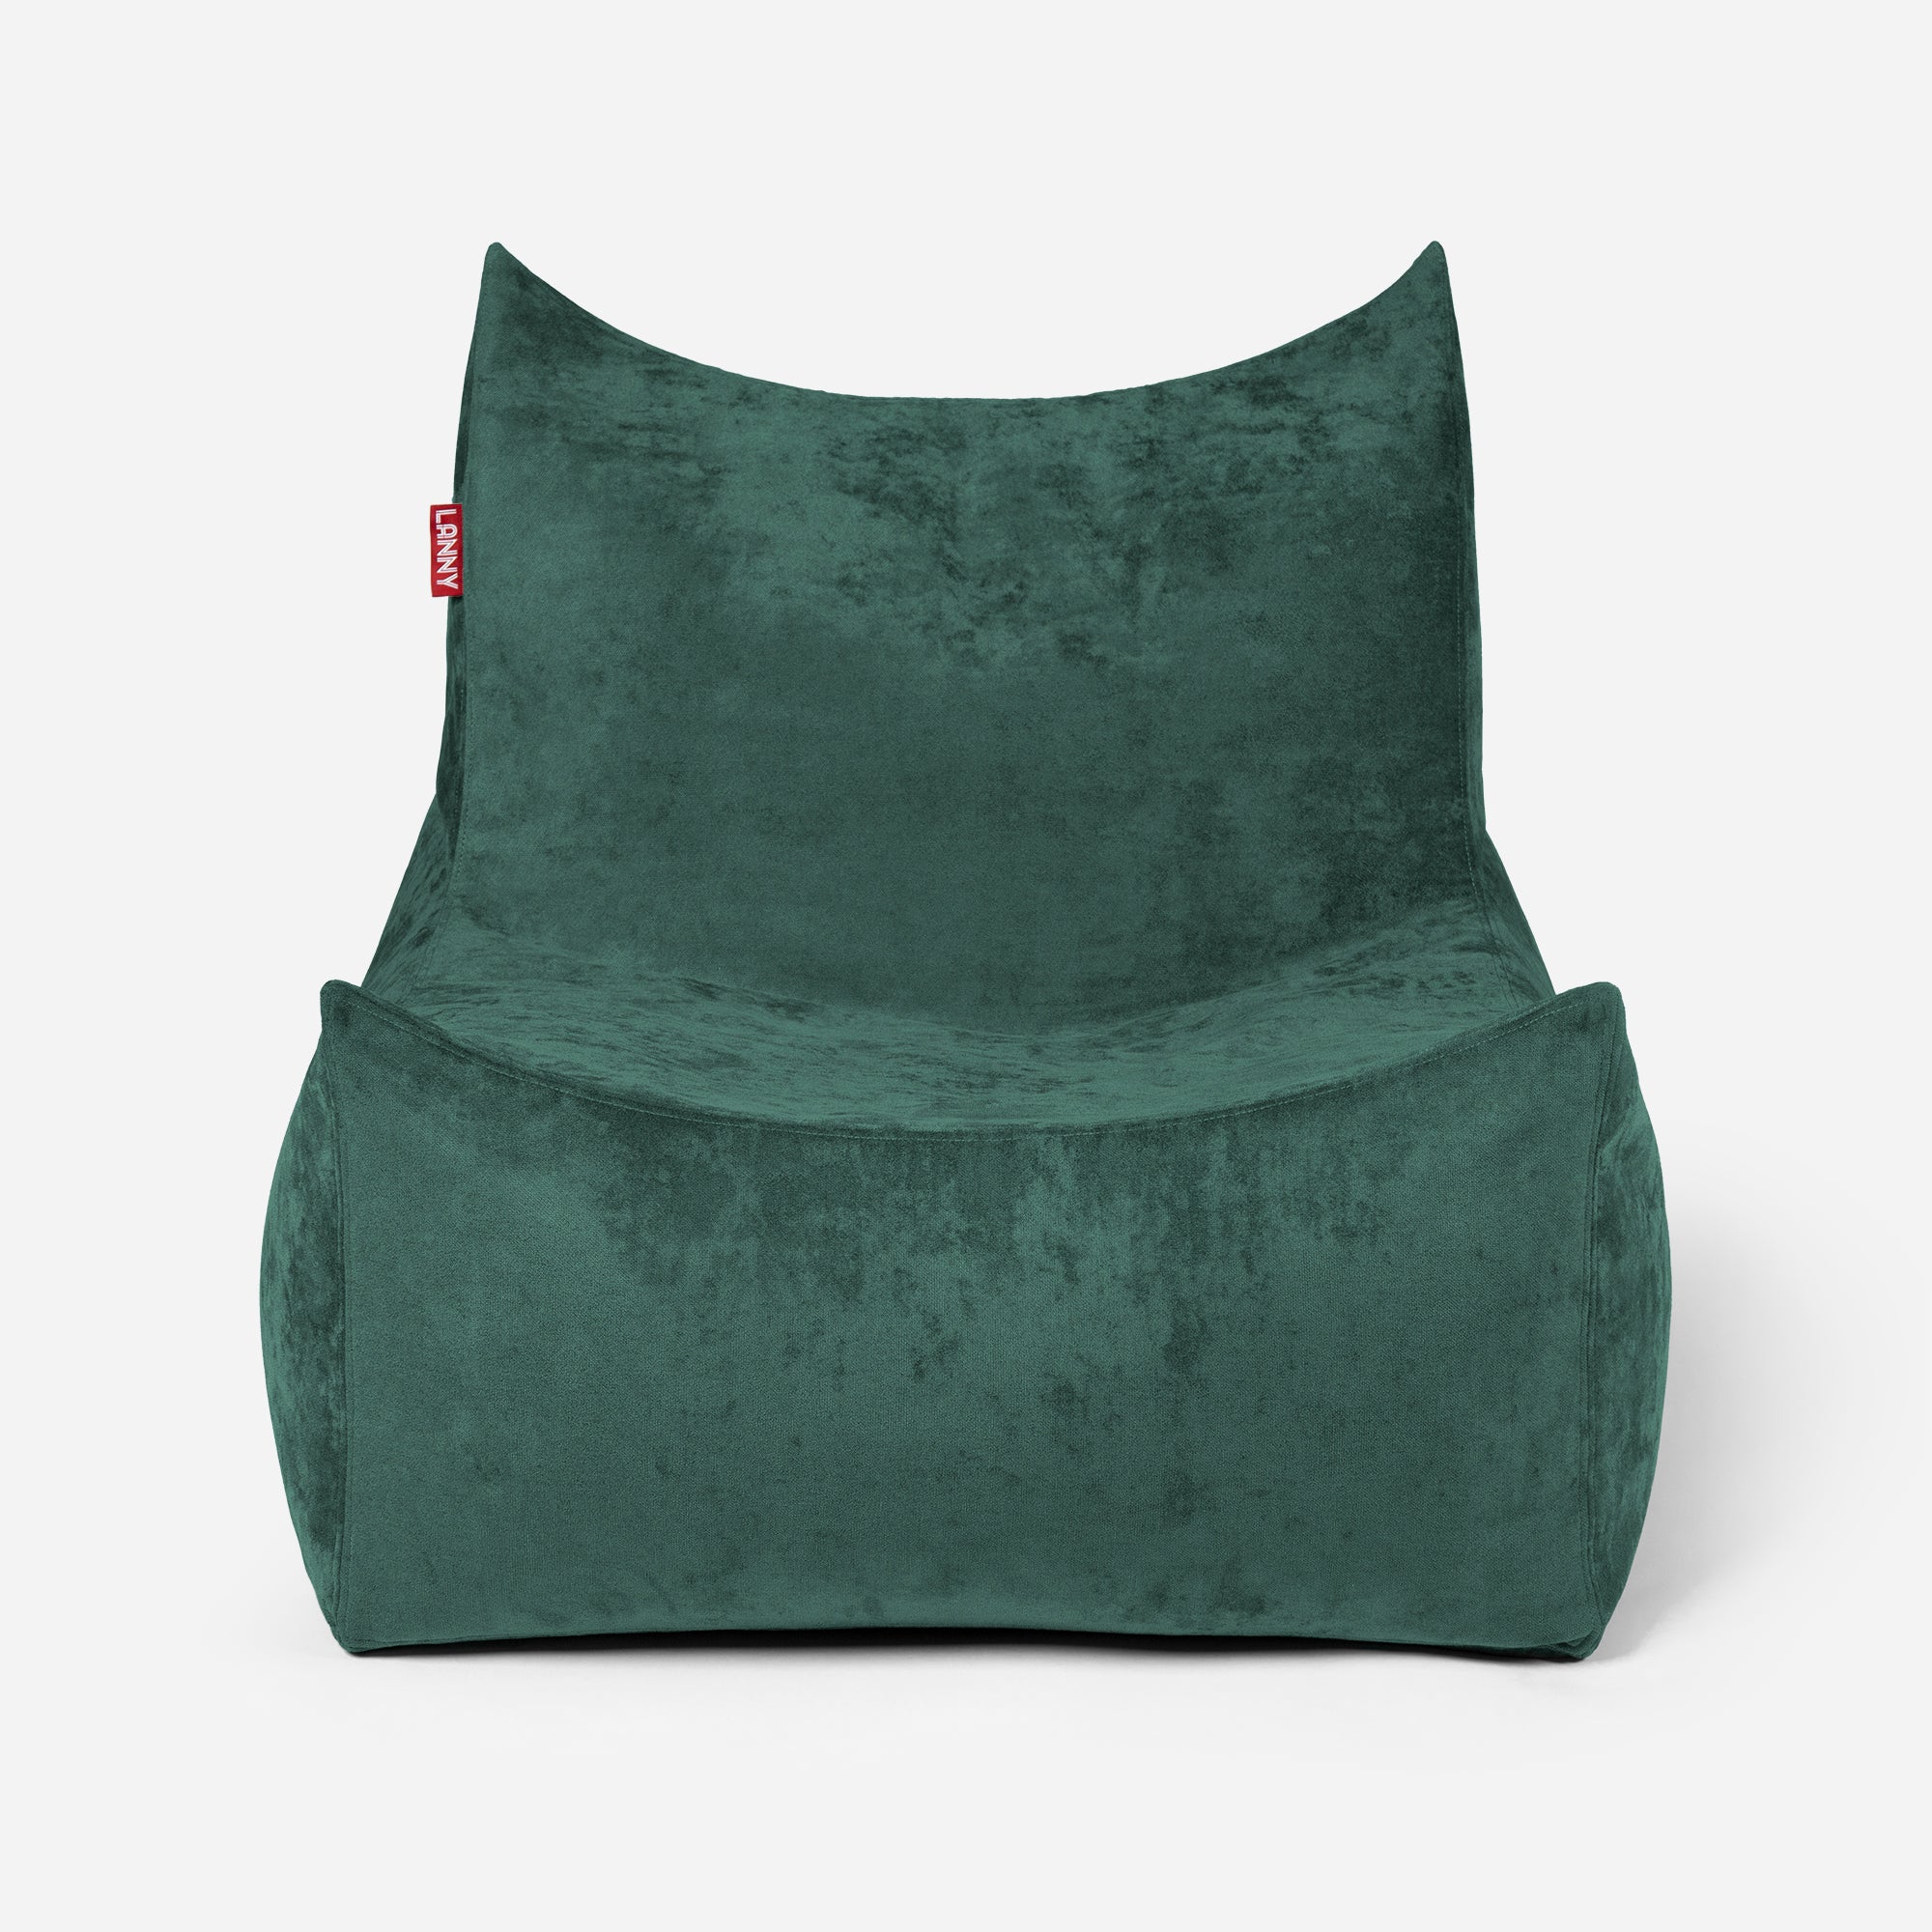 Quadro Aldo Green Bean bag Chair